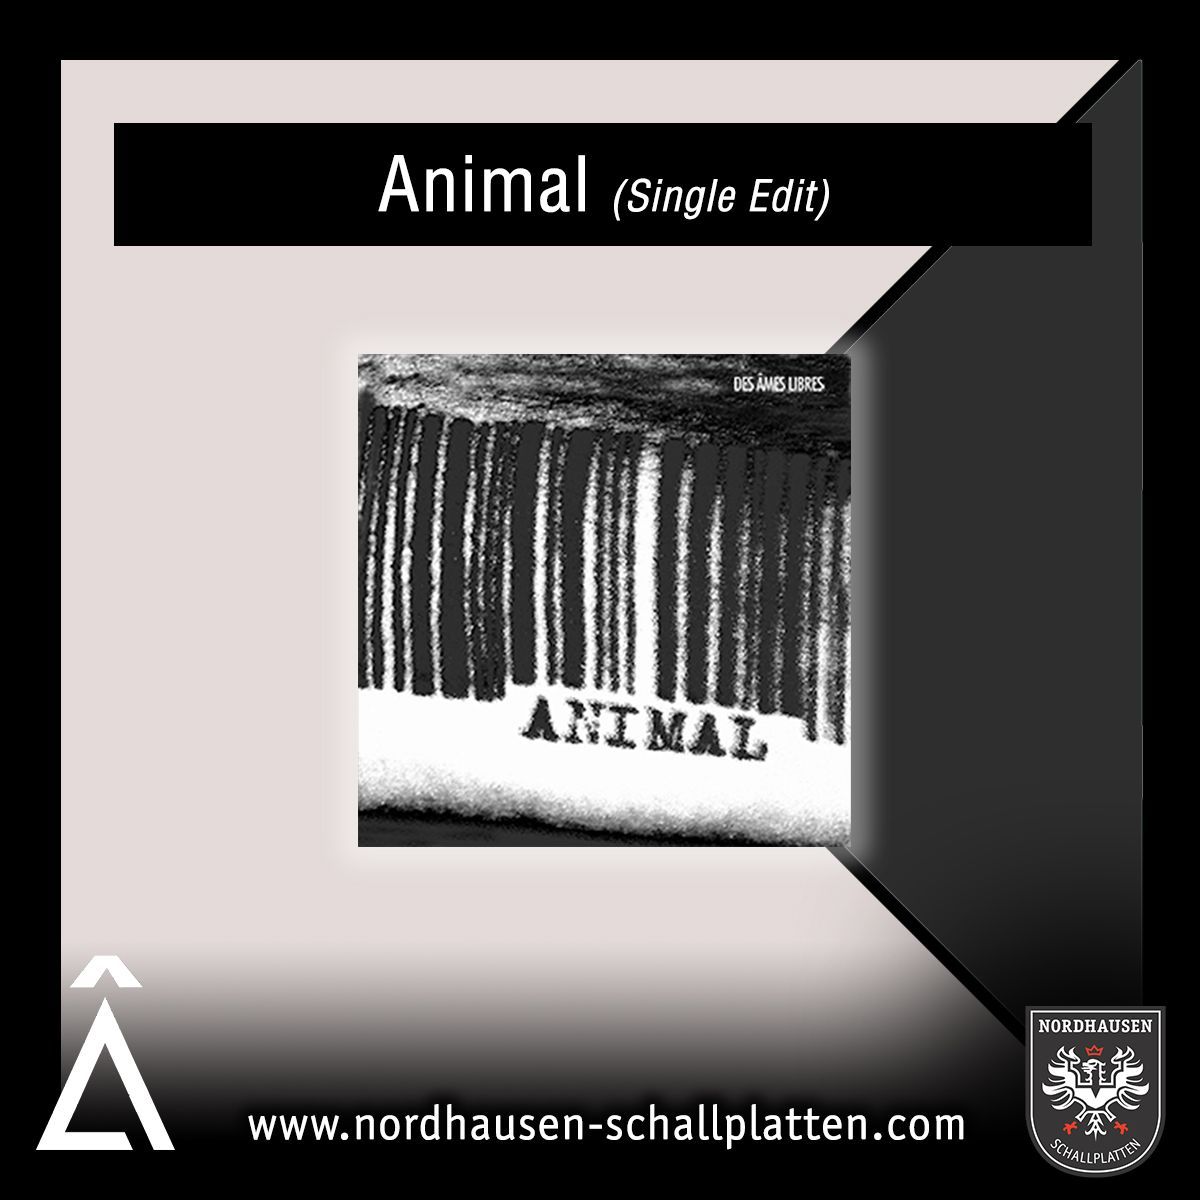 Escucha Animal de Des Âmes Libres en #Youtube en su edición del single: buff.ly/3BxPbf8 #NordhausenSchallplatten #desameslibres #dal #templeDAL #Â #spreadthemusic